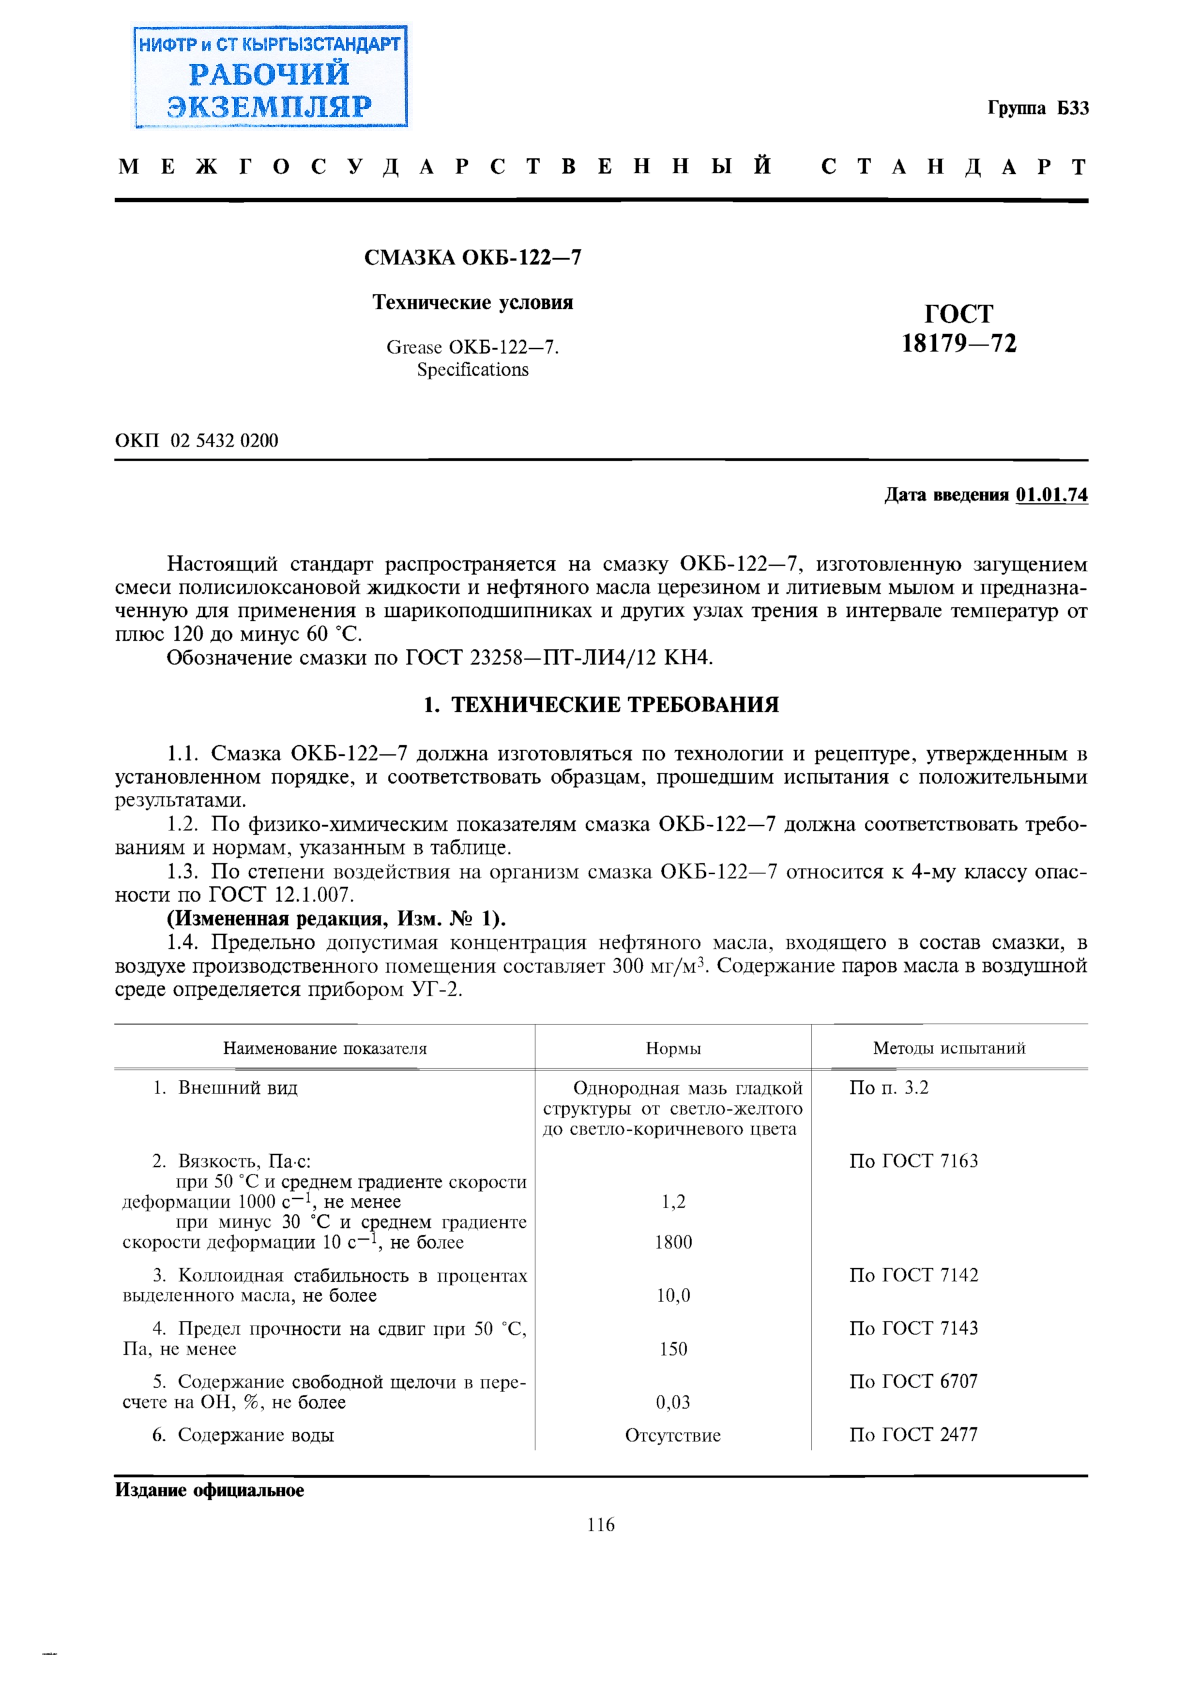 Смазка ОКБ-122-7. Технические условия